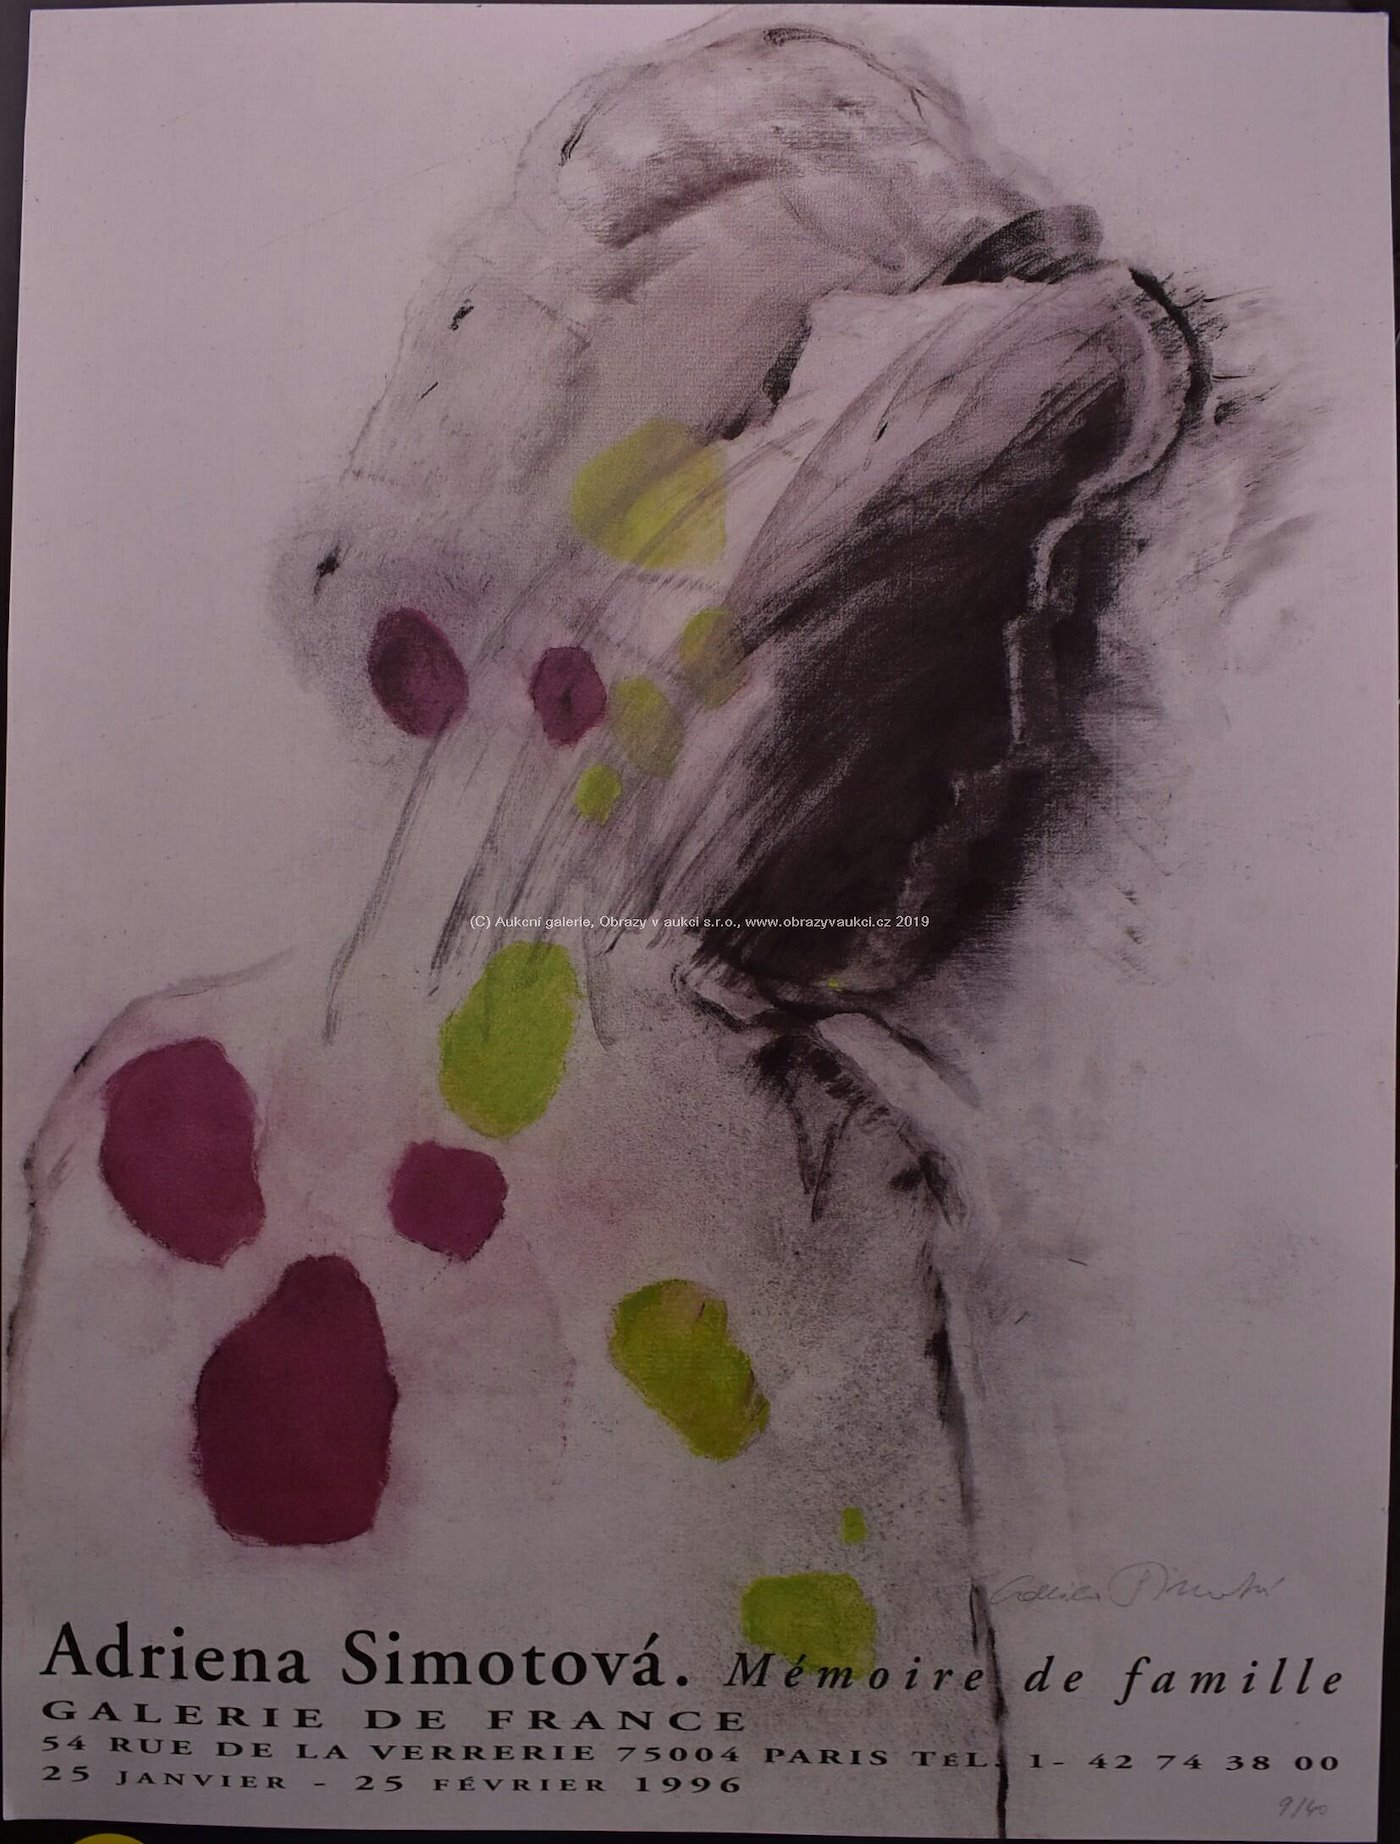 Adriena Šimotová - Plakát z galerie de France 54 rue de La verrerie 75004 Paris 1996